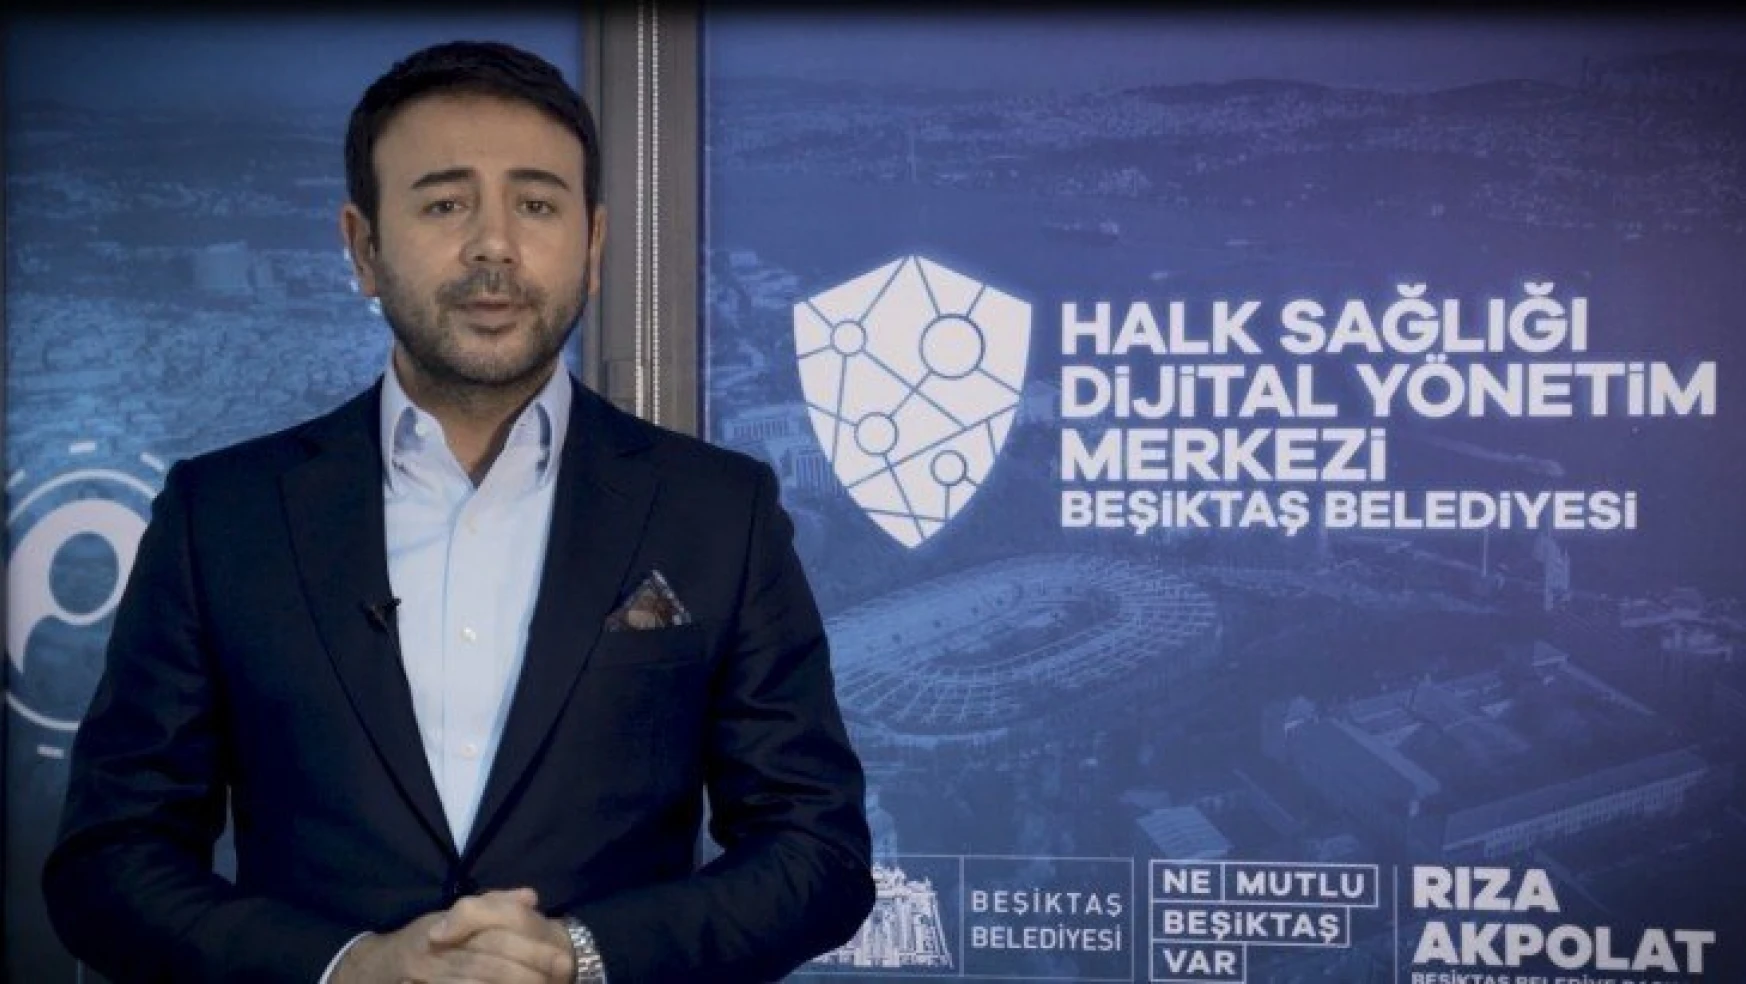 Beşiktaş'ta iş yeri kiraları, yurtlar ve kreşlerden bir süre ücret alınmayacak